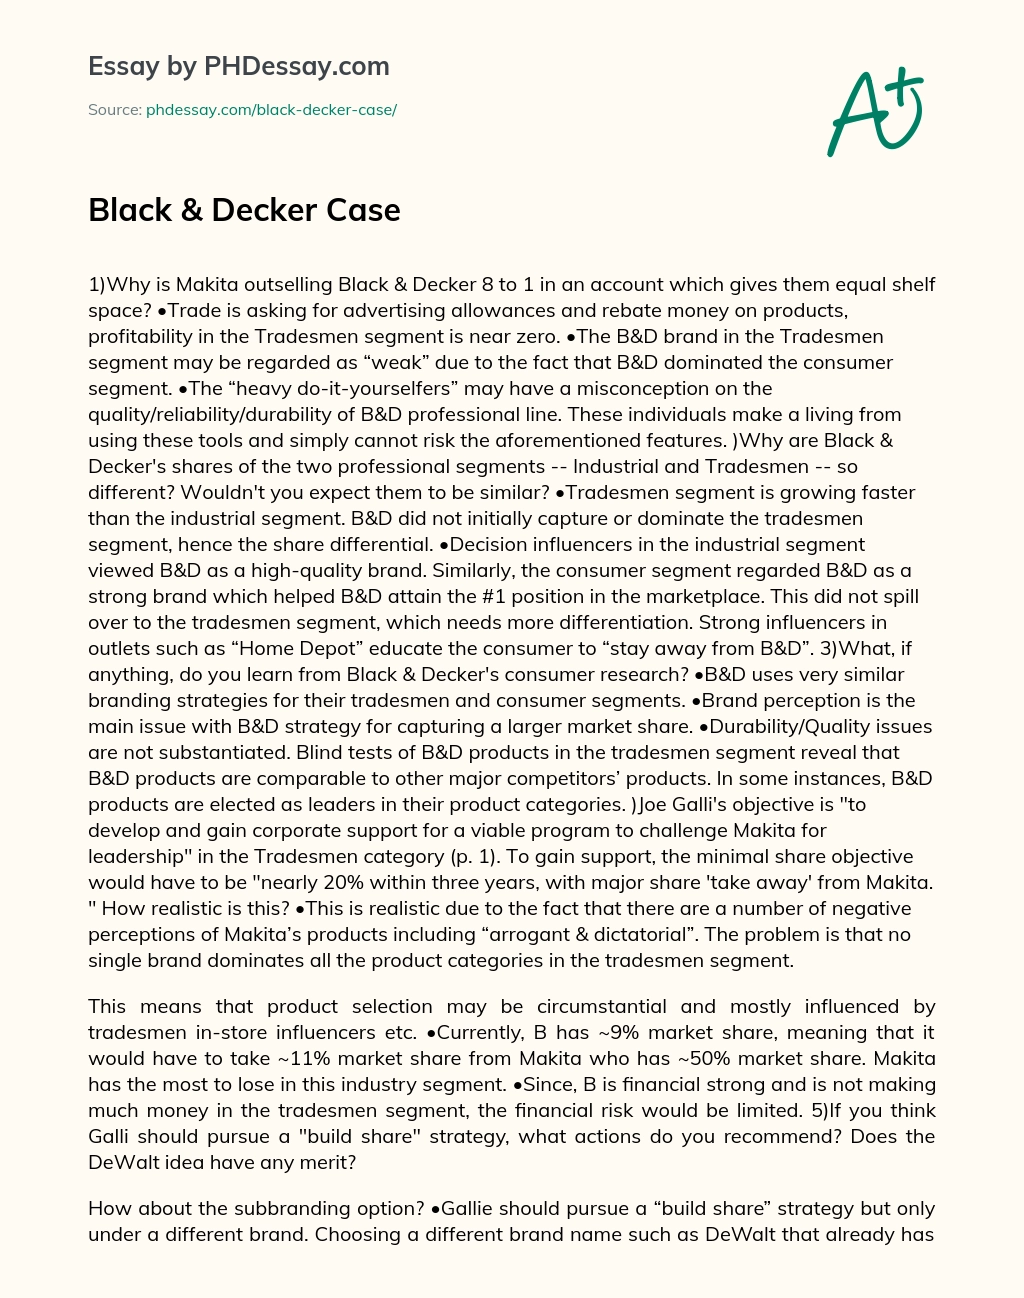 Black & Decker Case essay